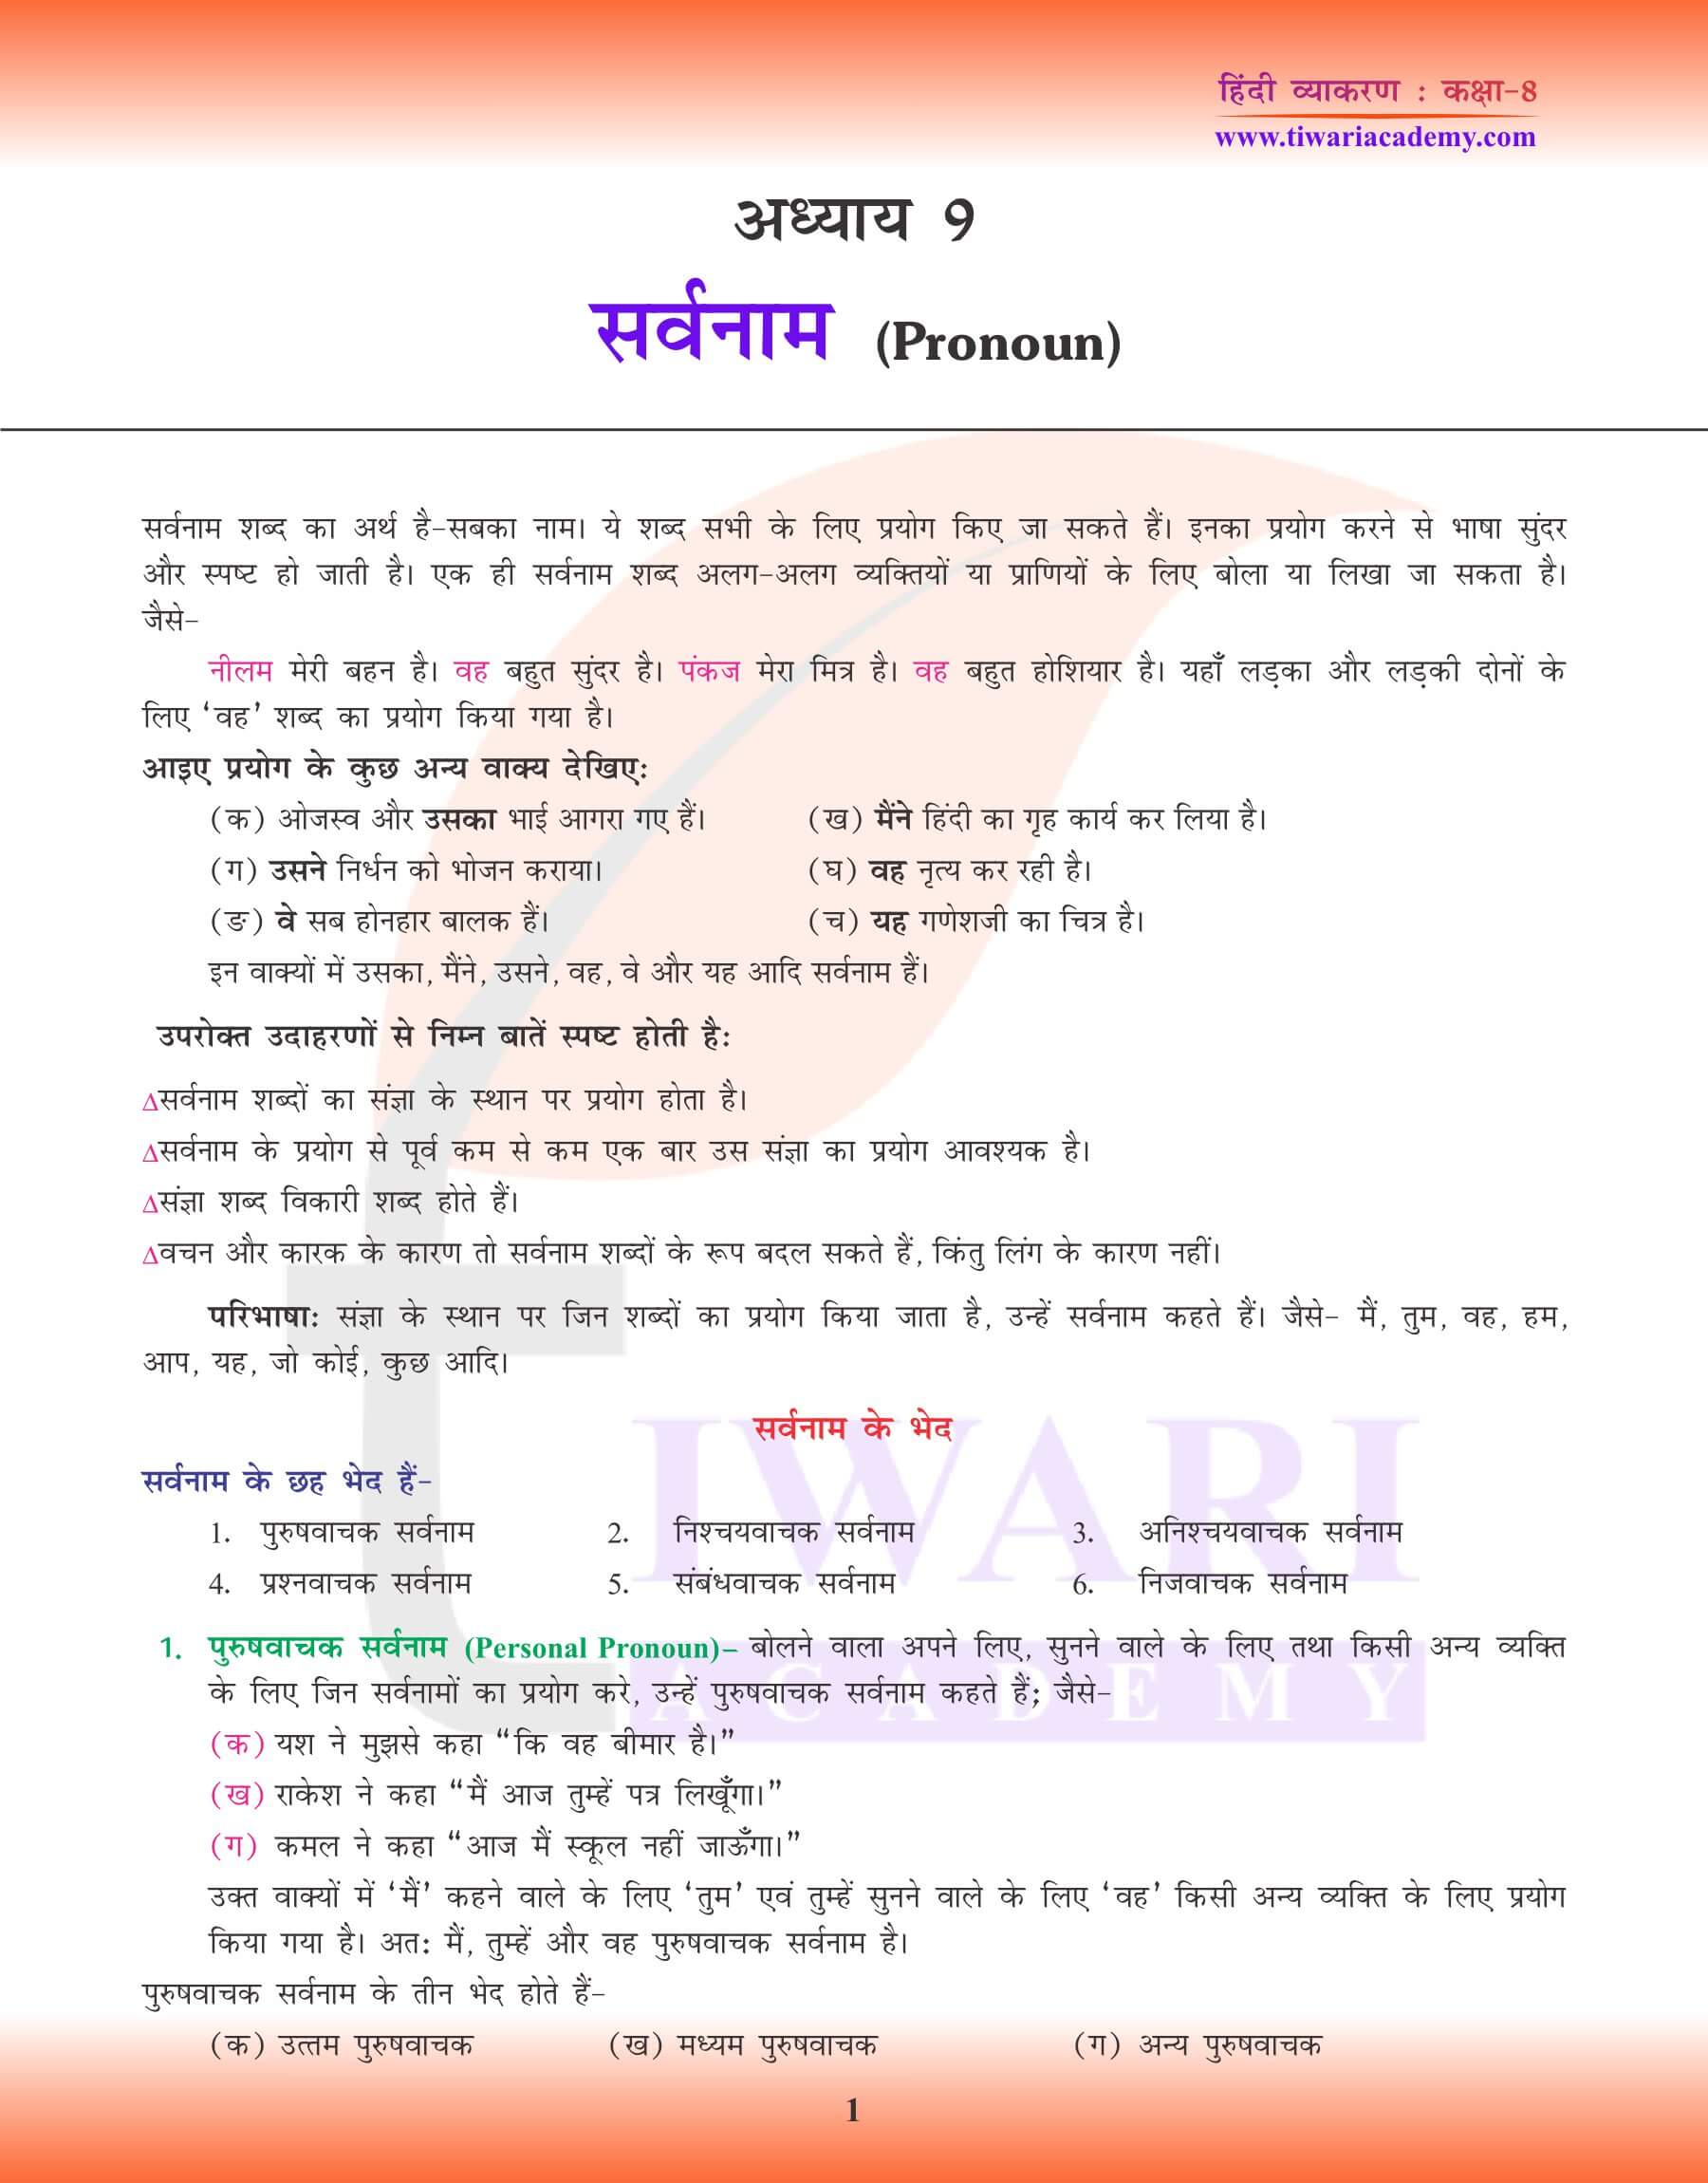 कक्षा 8 हिंदी व्याकरण अध्याय 9